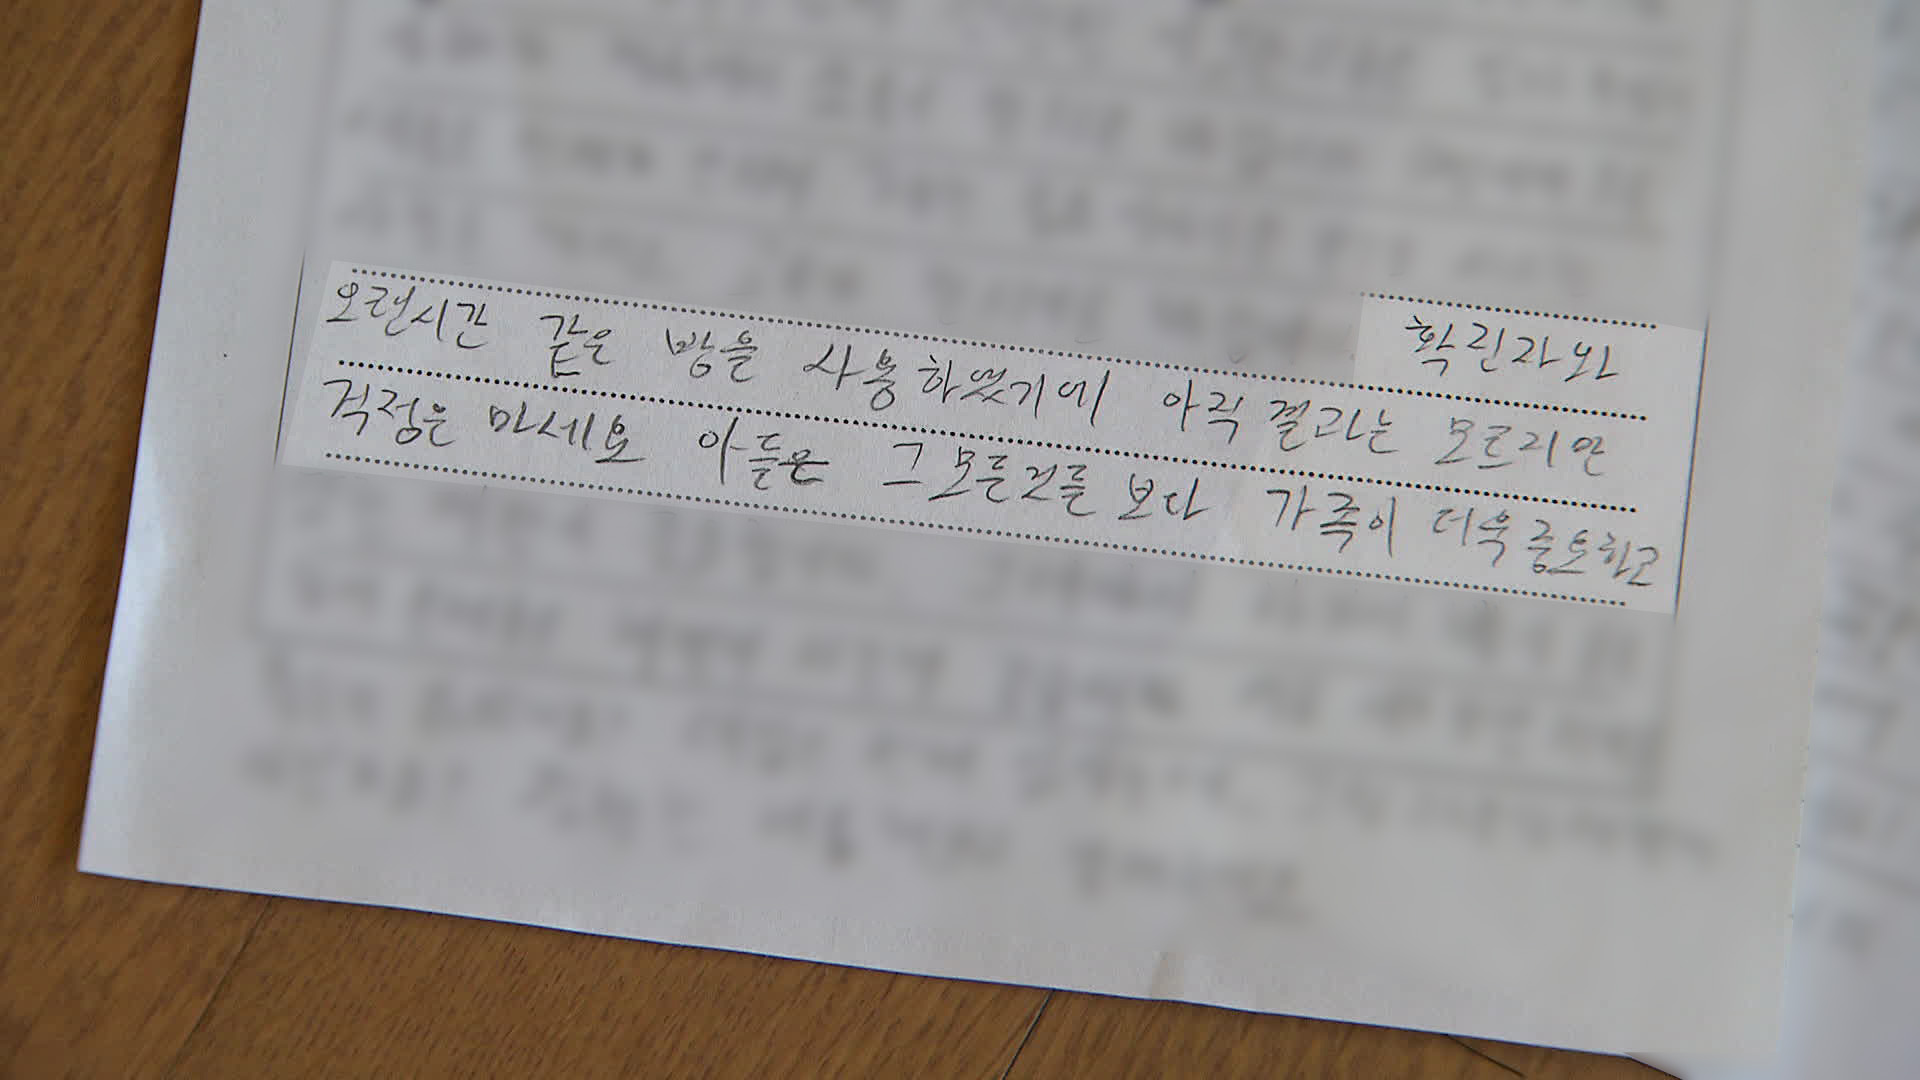 동부구치소에 수감 중인 김 모 씨가 지난달 가족에게 보낸 편지